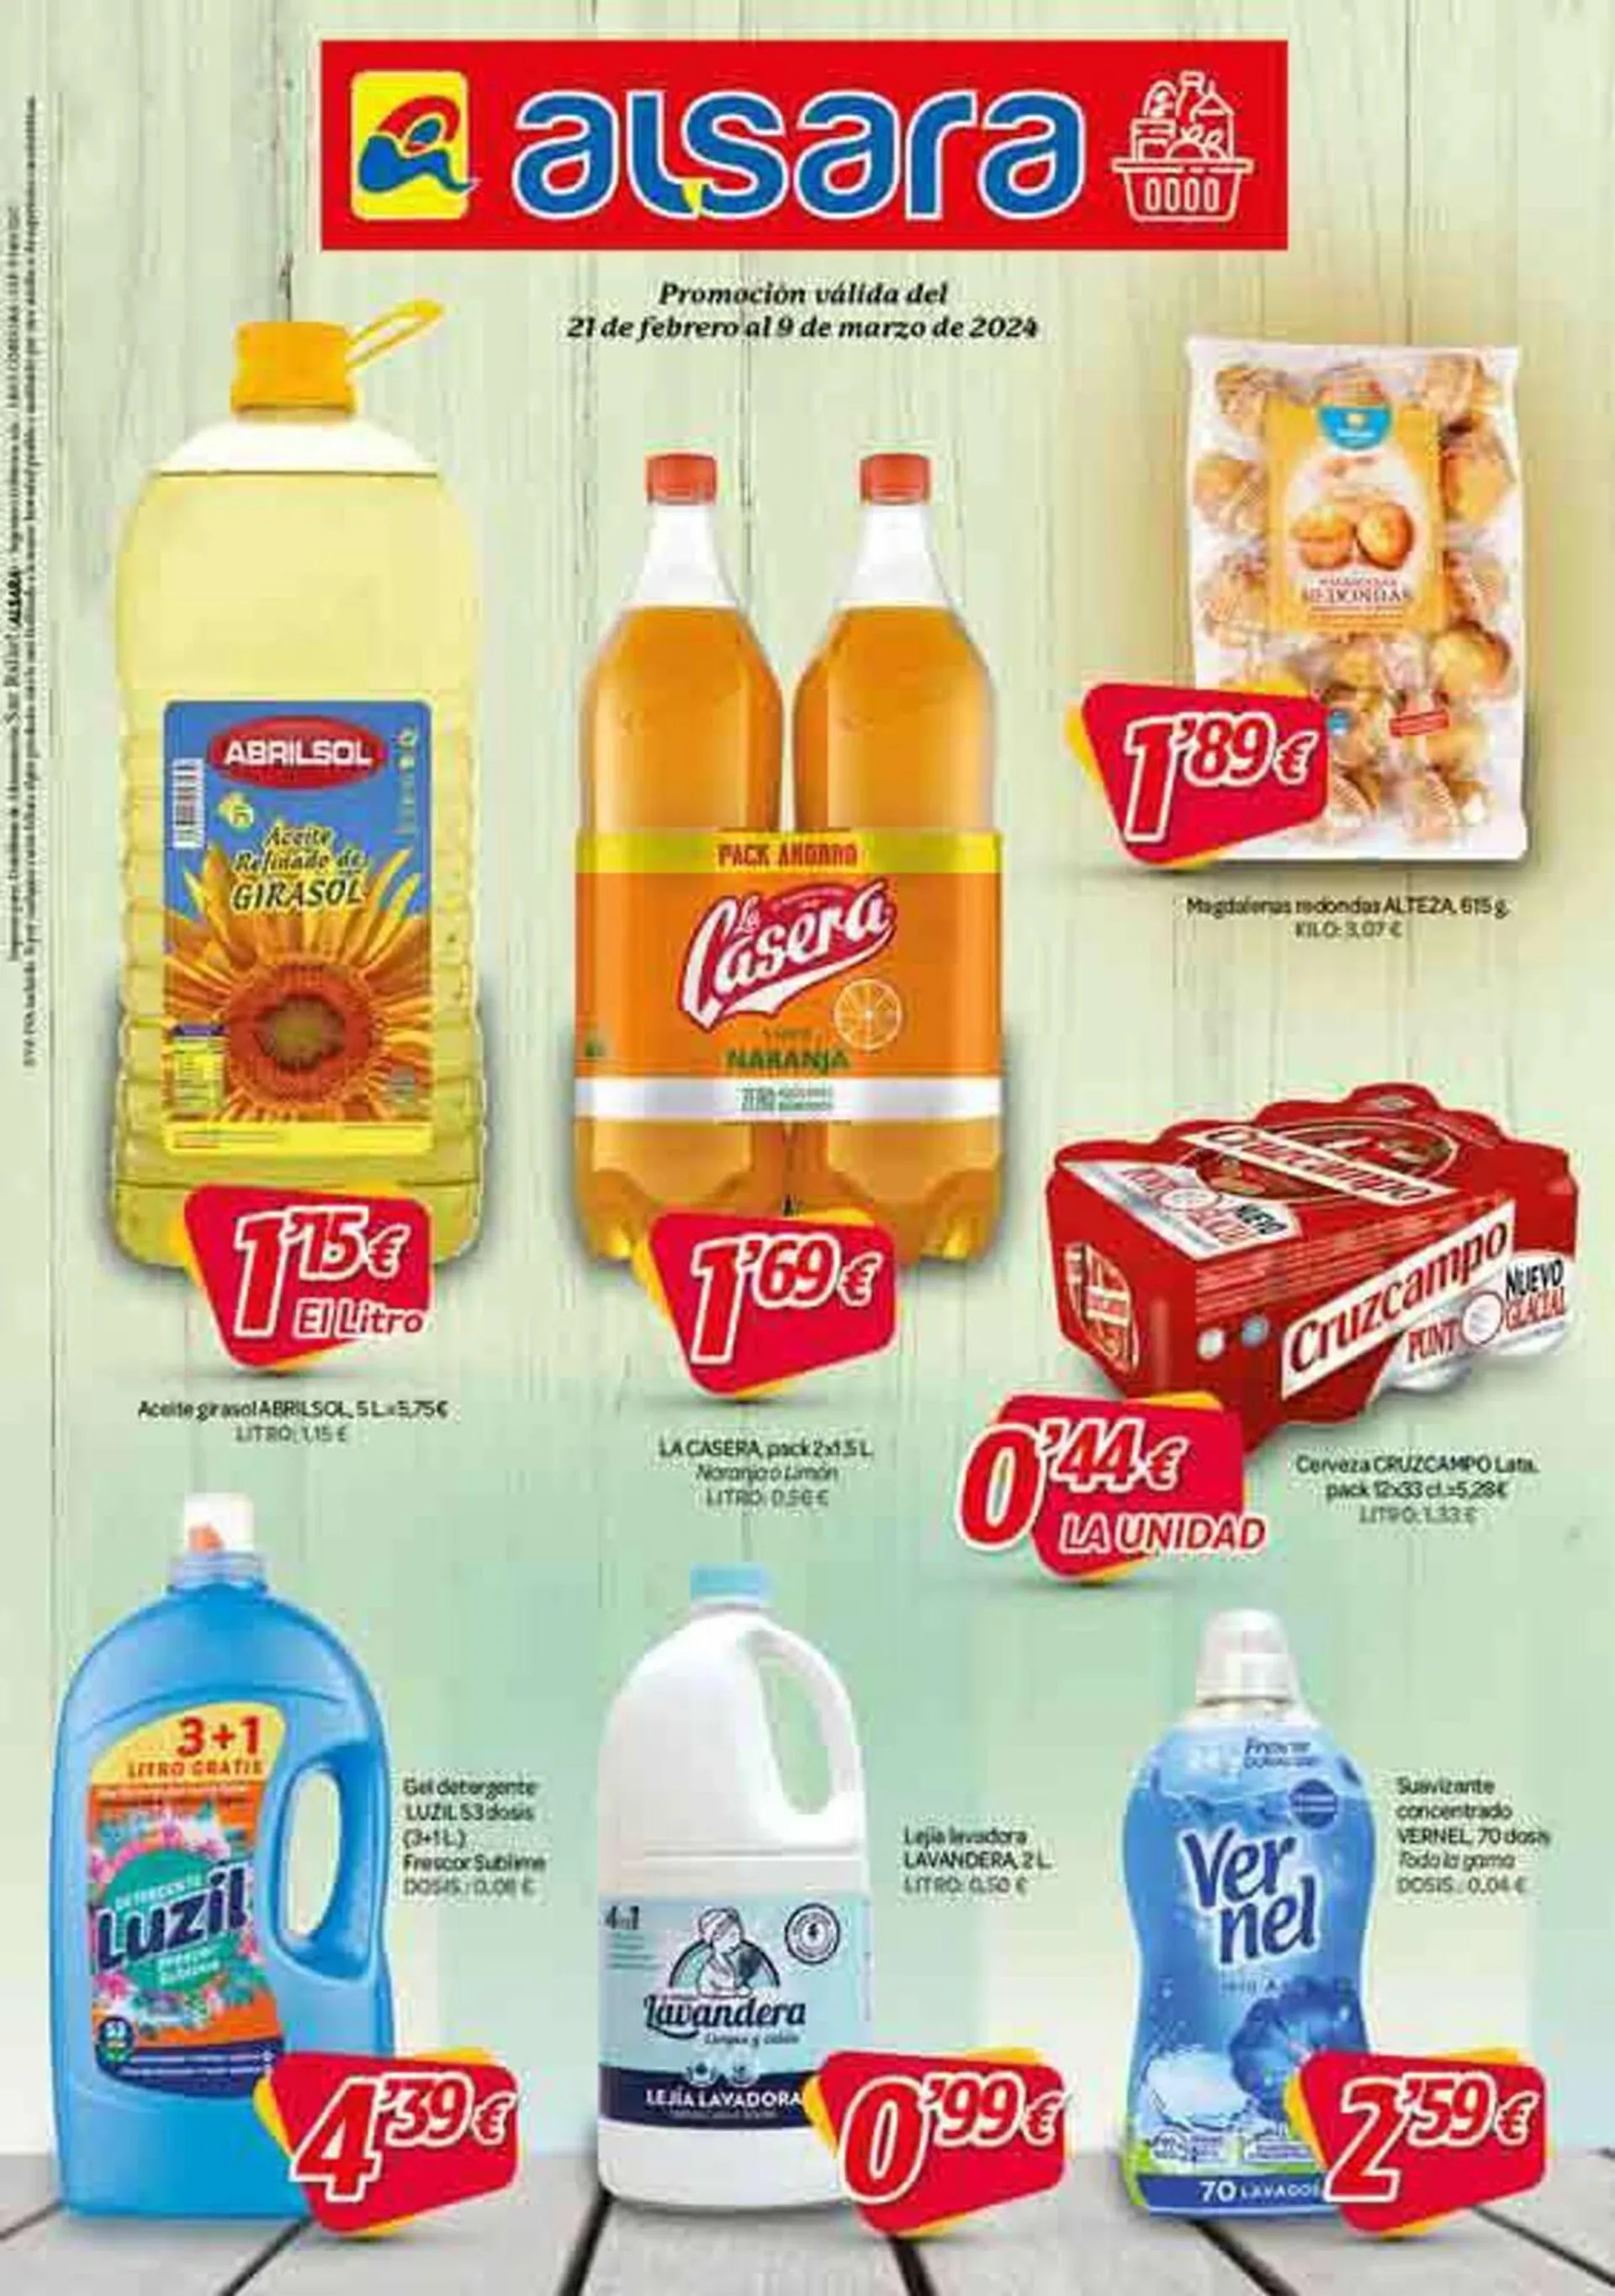 Catálogo de Folleto Alsara Supermercados 21 de febrero al 9 de marzo 2024 - Página 